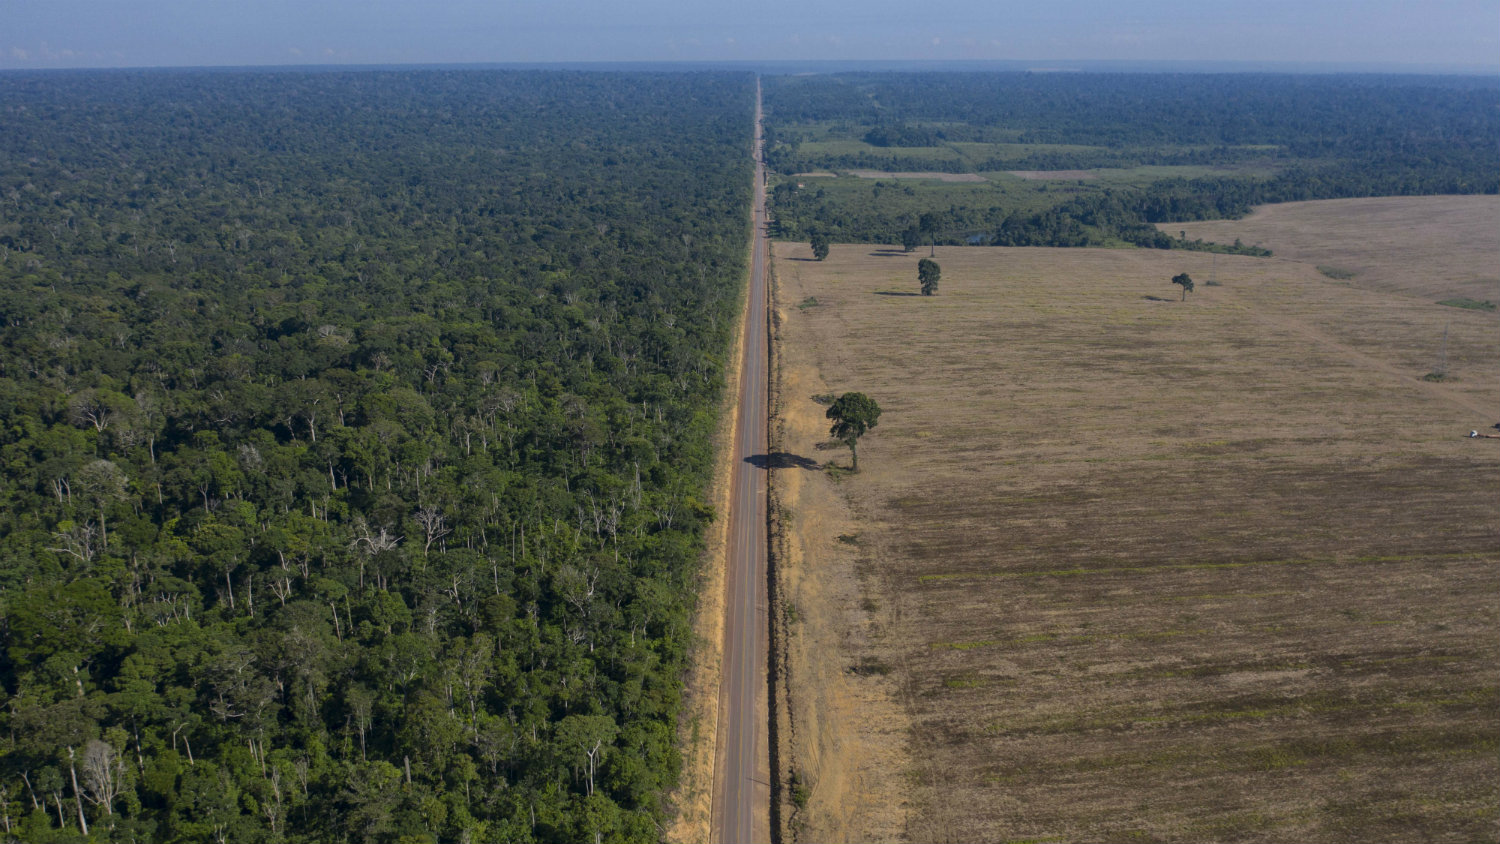 Udvostručeno uništavanje prašuma Amazonije 1